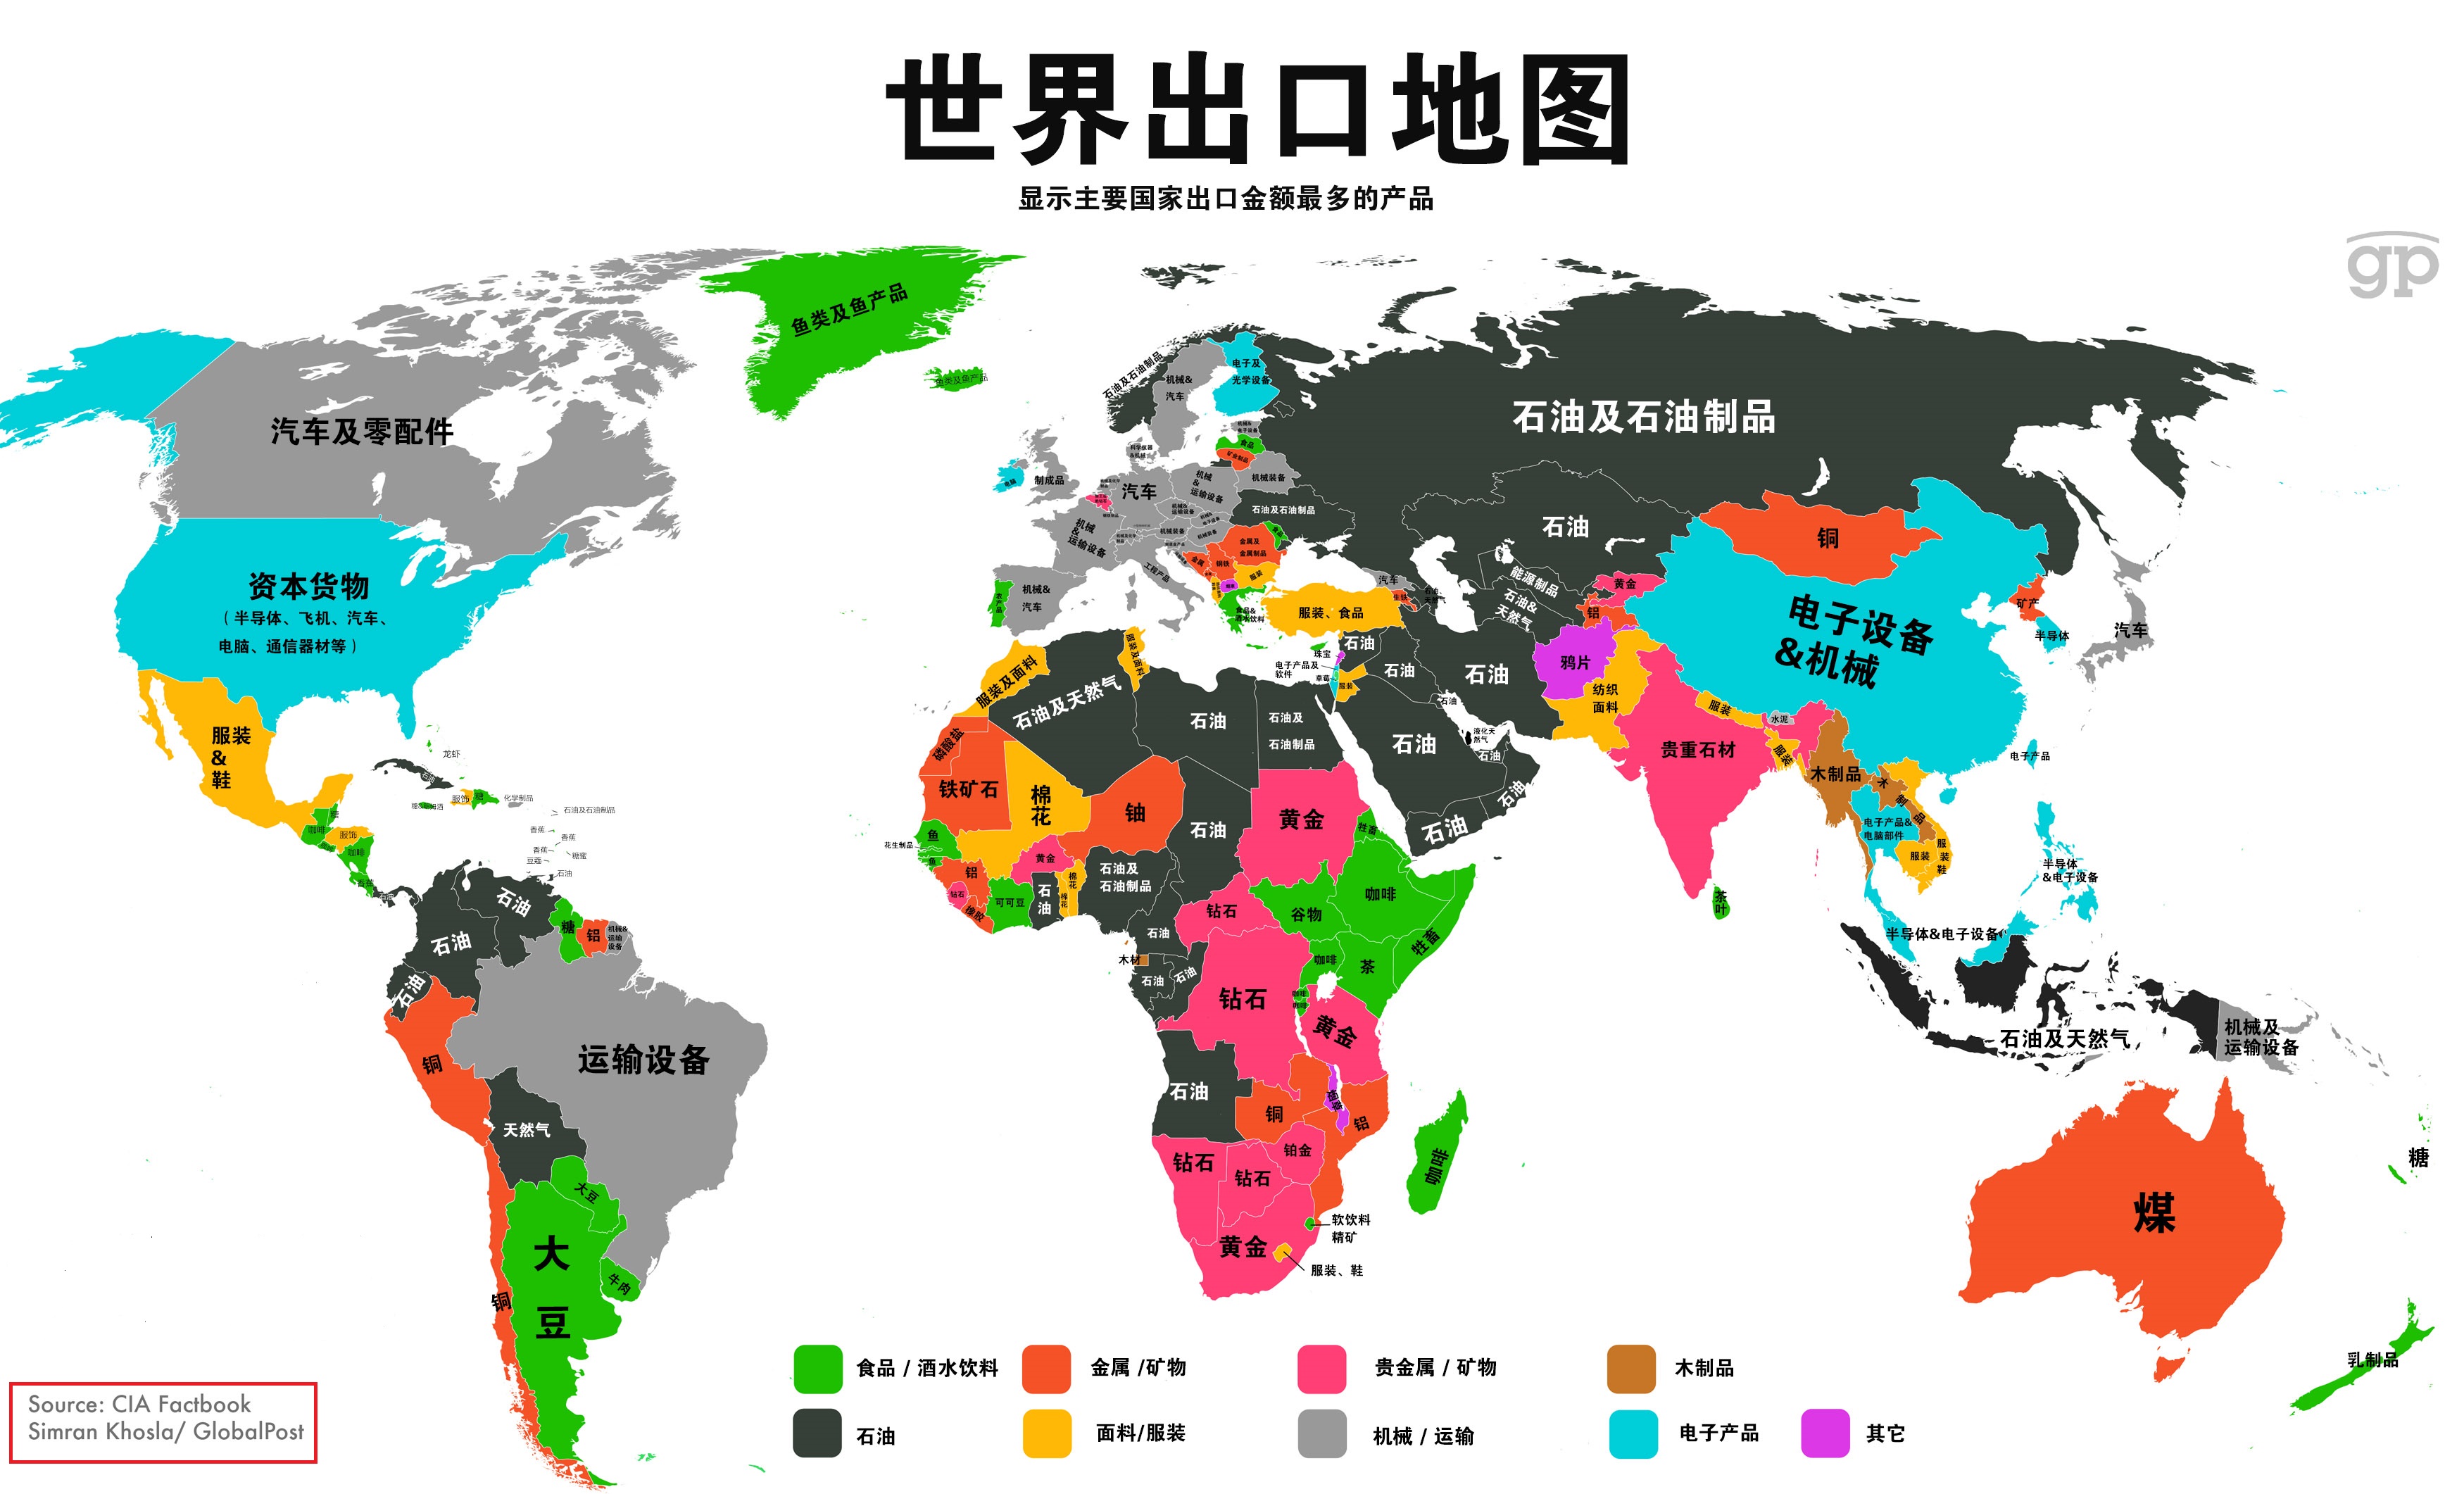 外贸小常识:世界各国的主要商品分布